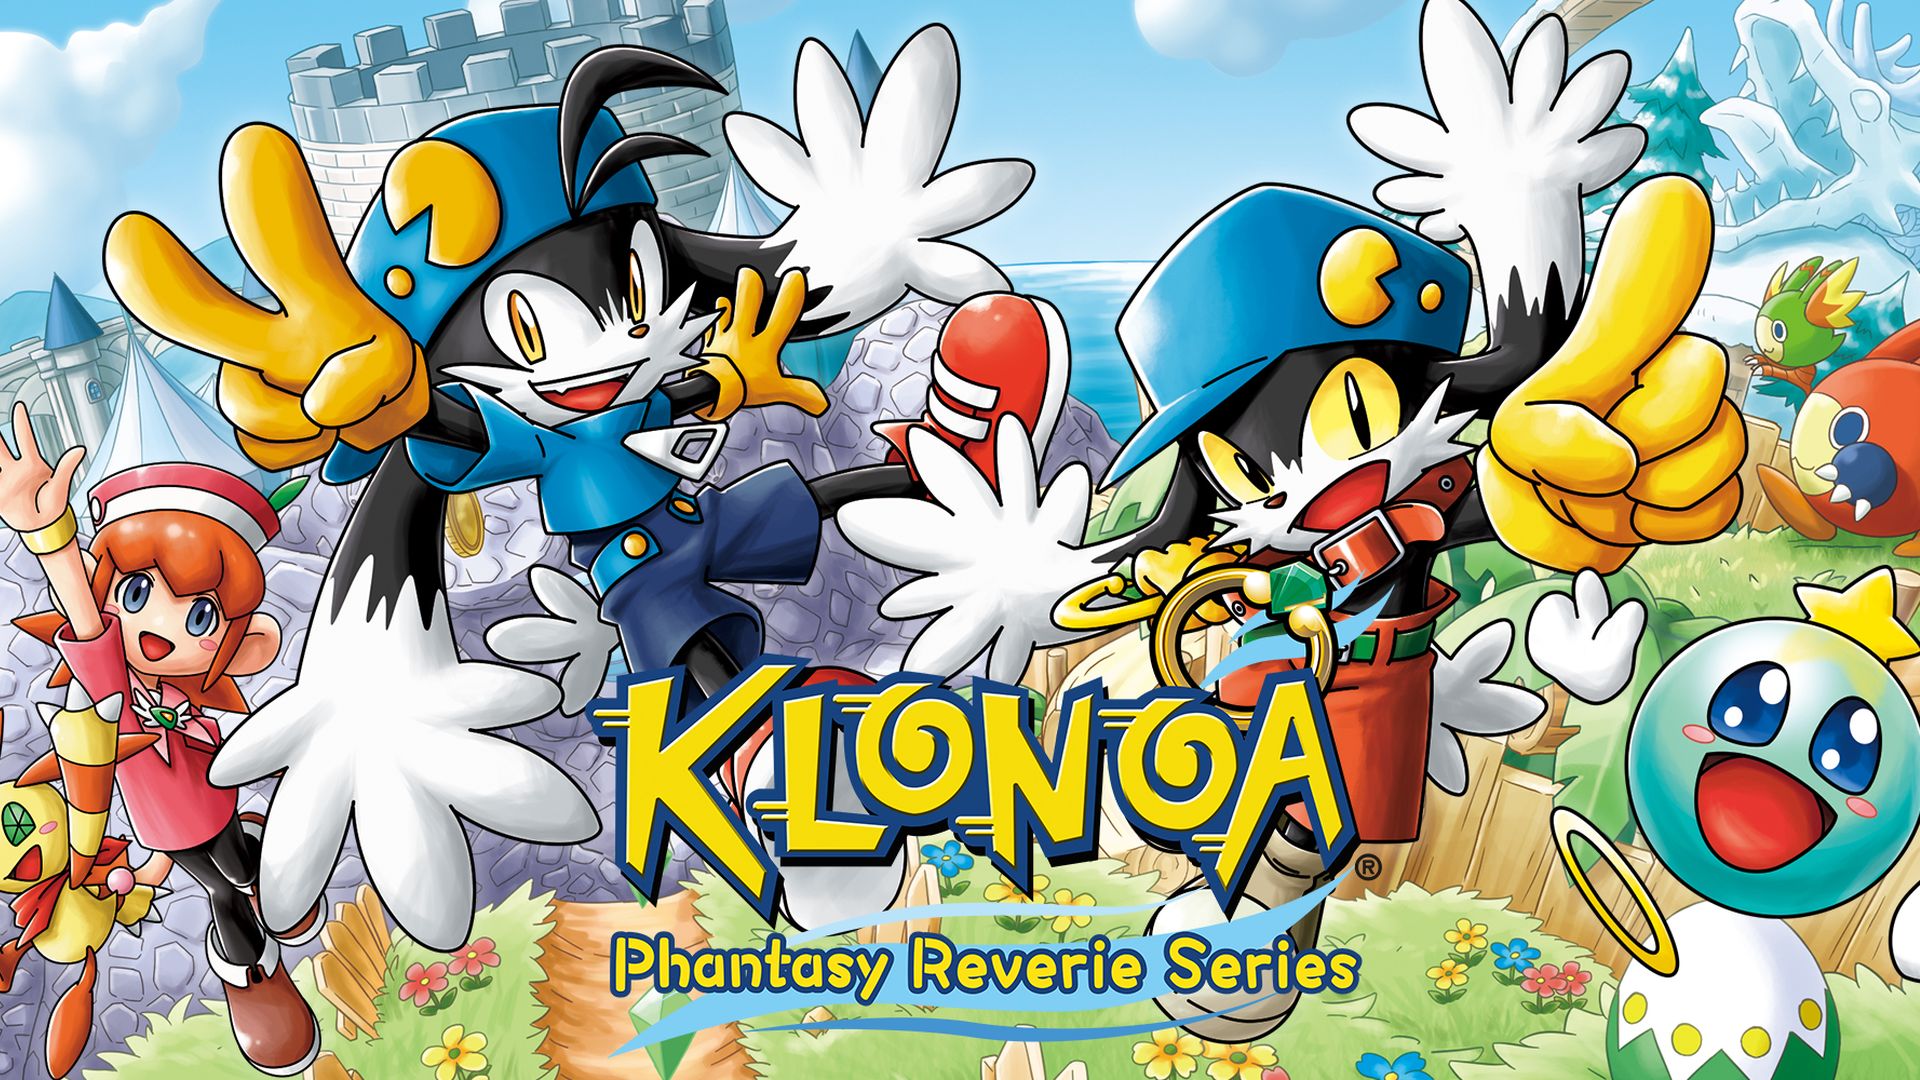 Recensione della serie Klonoa Phantasy Reverie - A Great Remaster